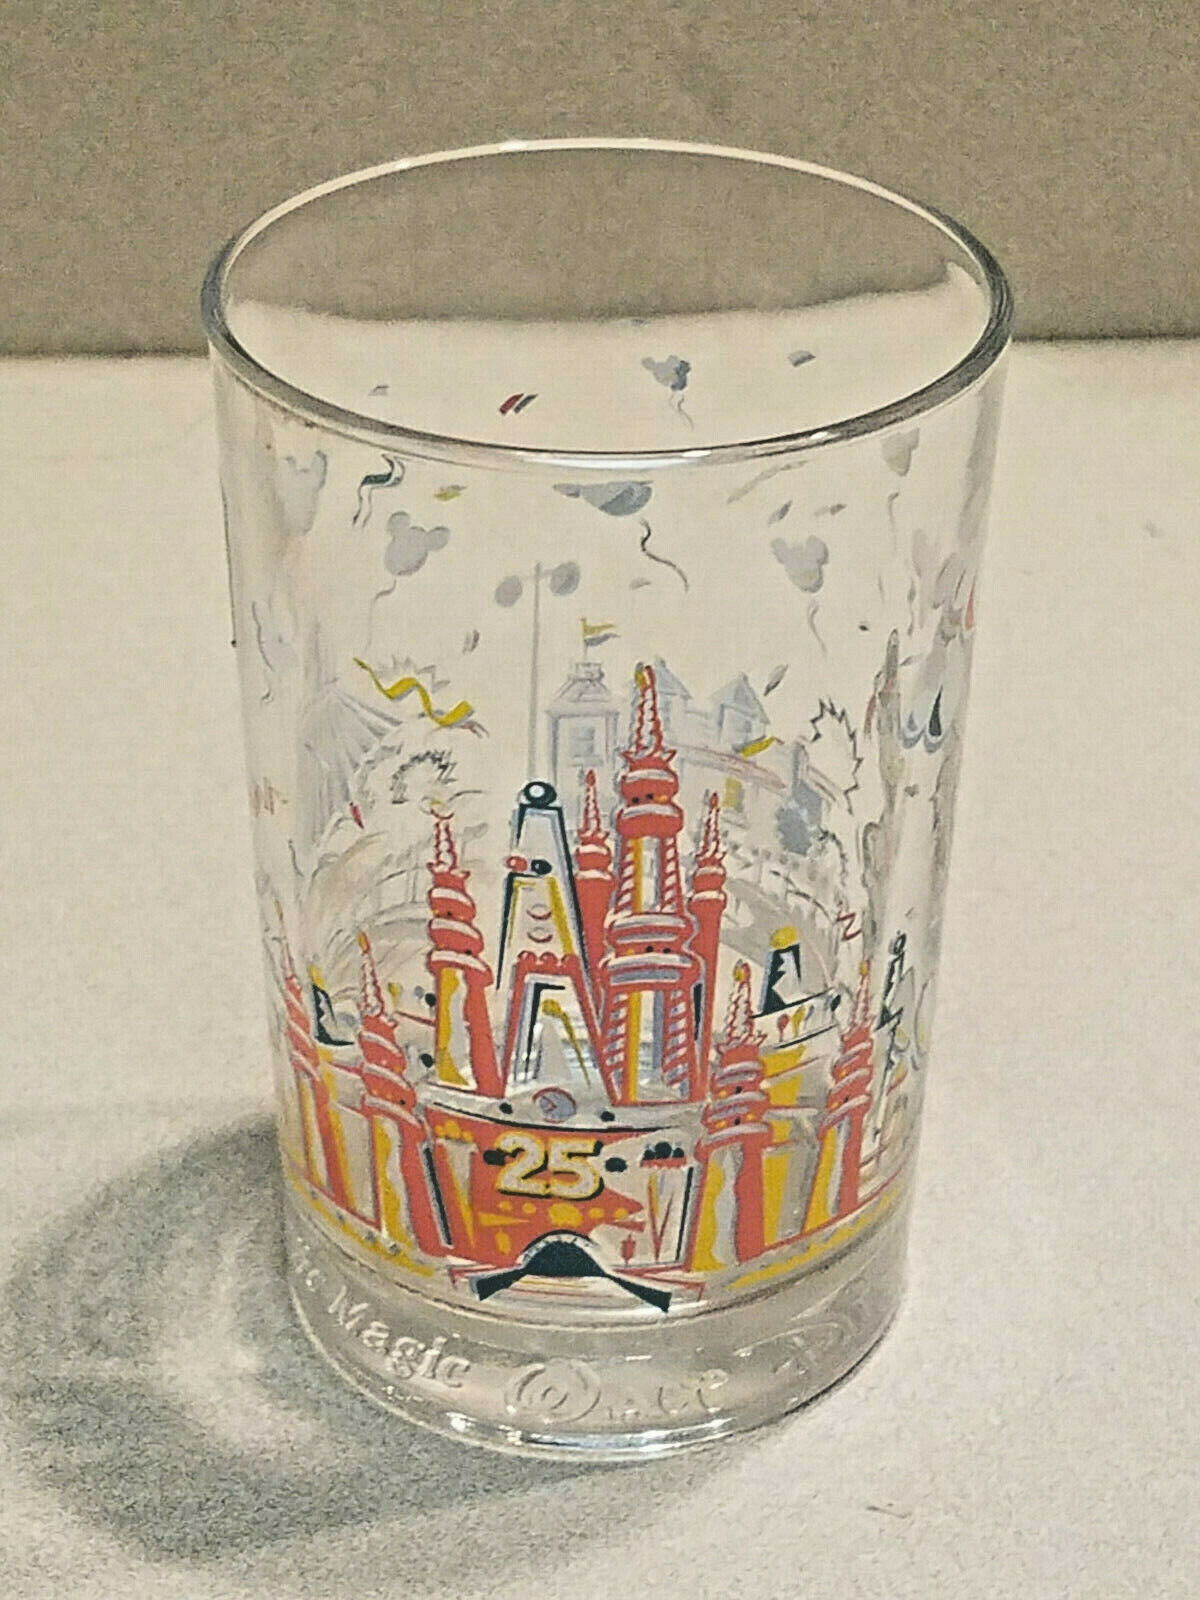 McDonalds Disney World 100 Years of Magic 25th Anniversary Glass